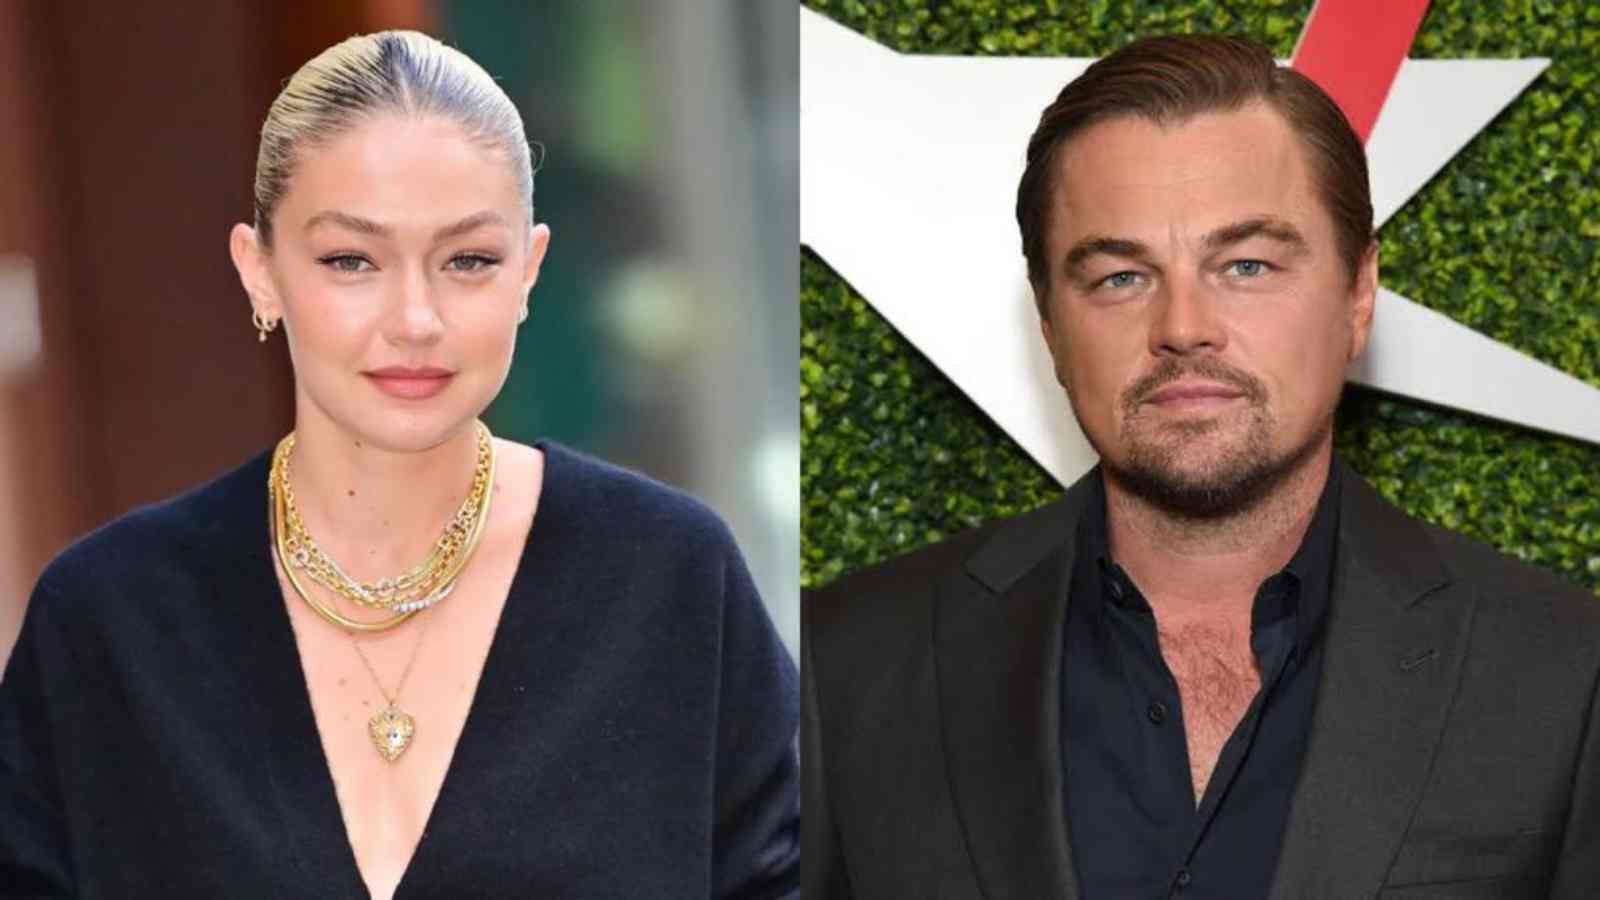 Leonardo DiCaprio is 'pursuing' Gigi Hadid